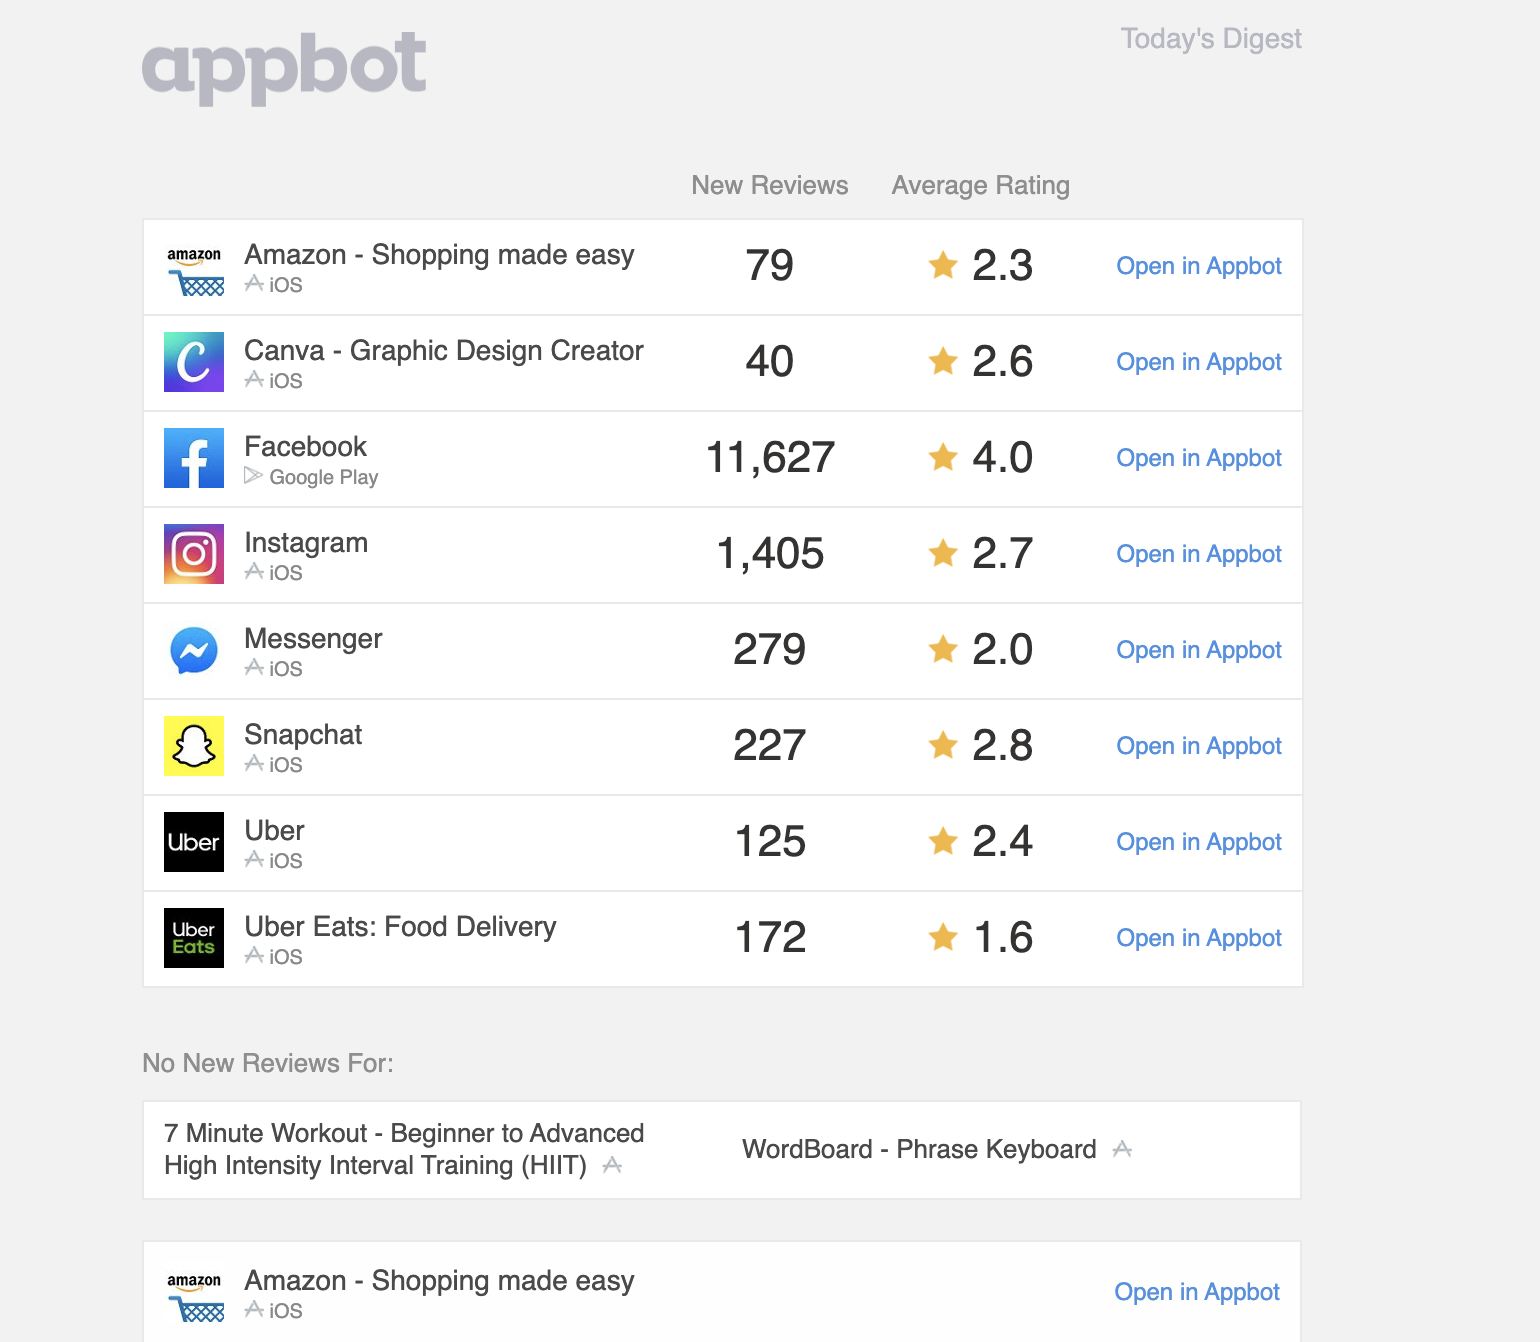 appbot review data summary screenshot